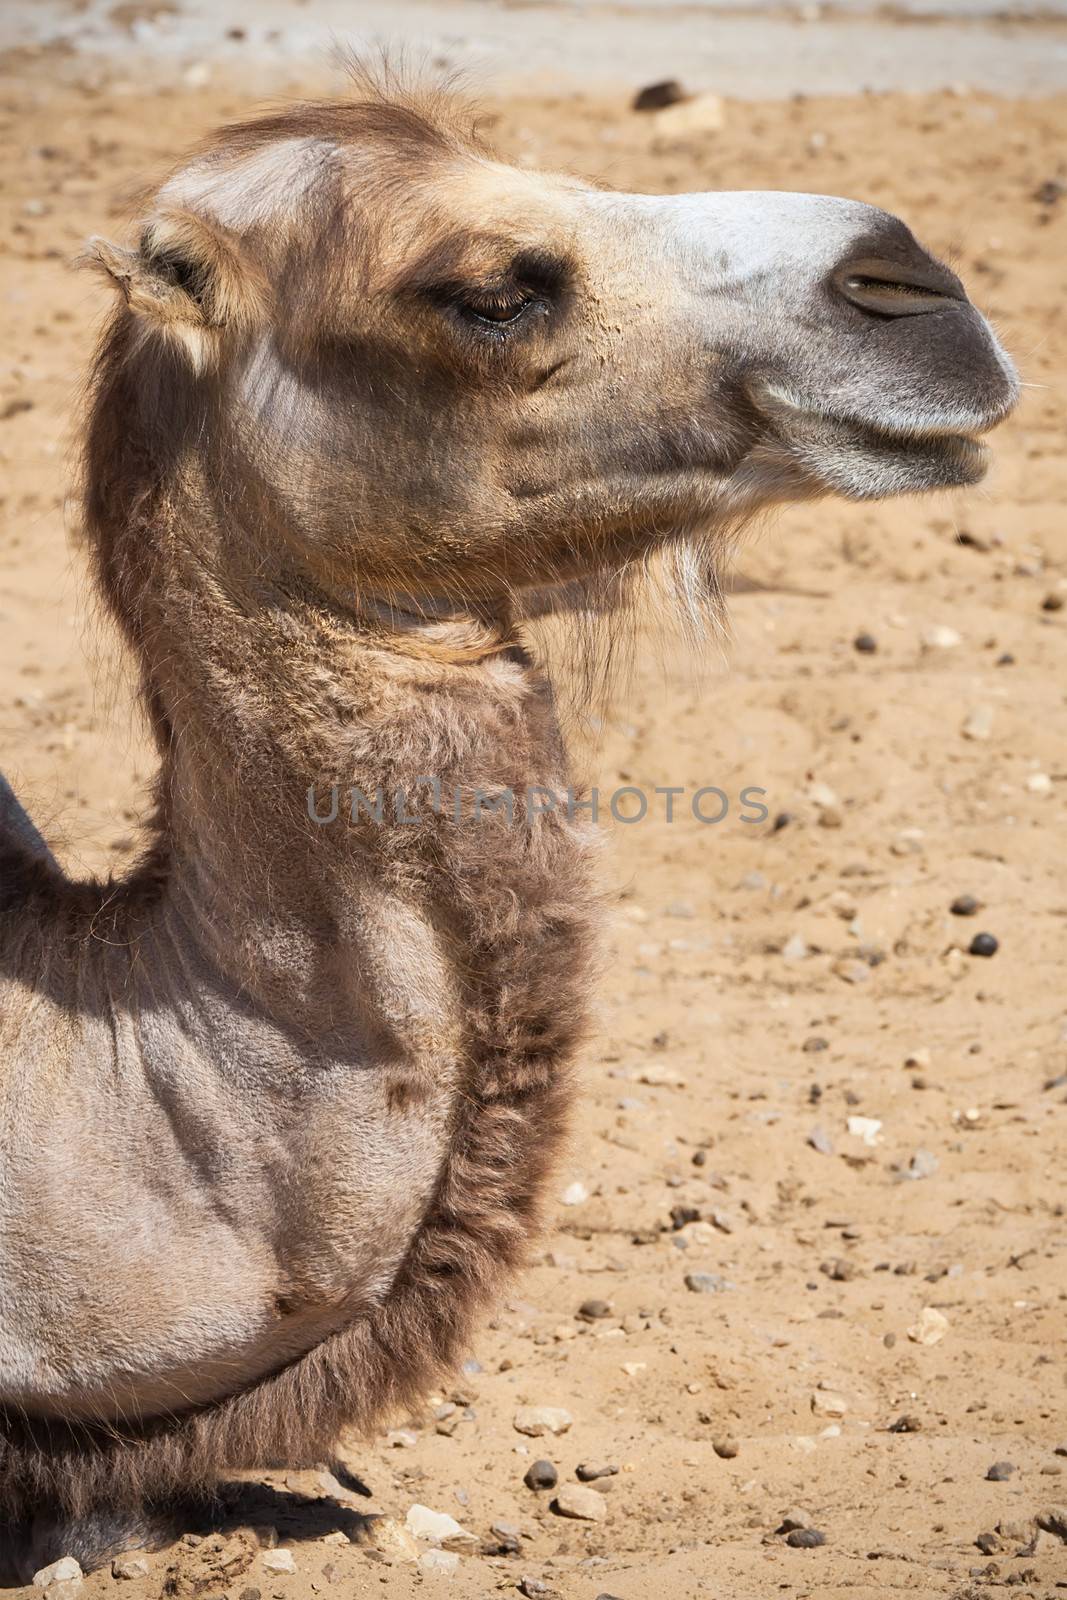 Nice close up photo of big camel